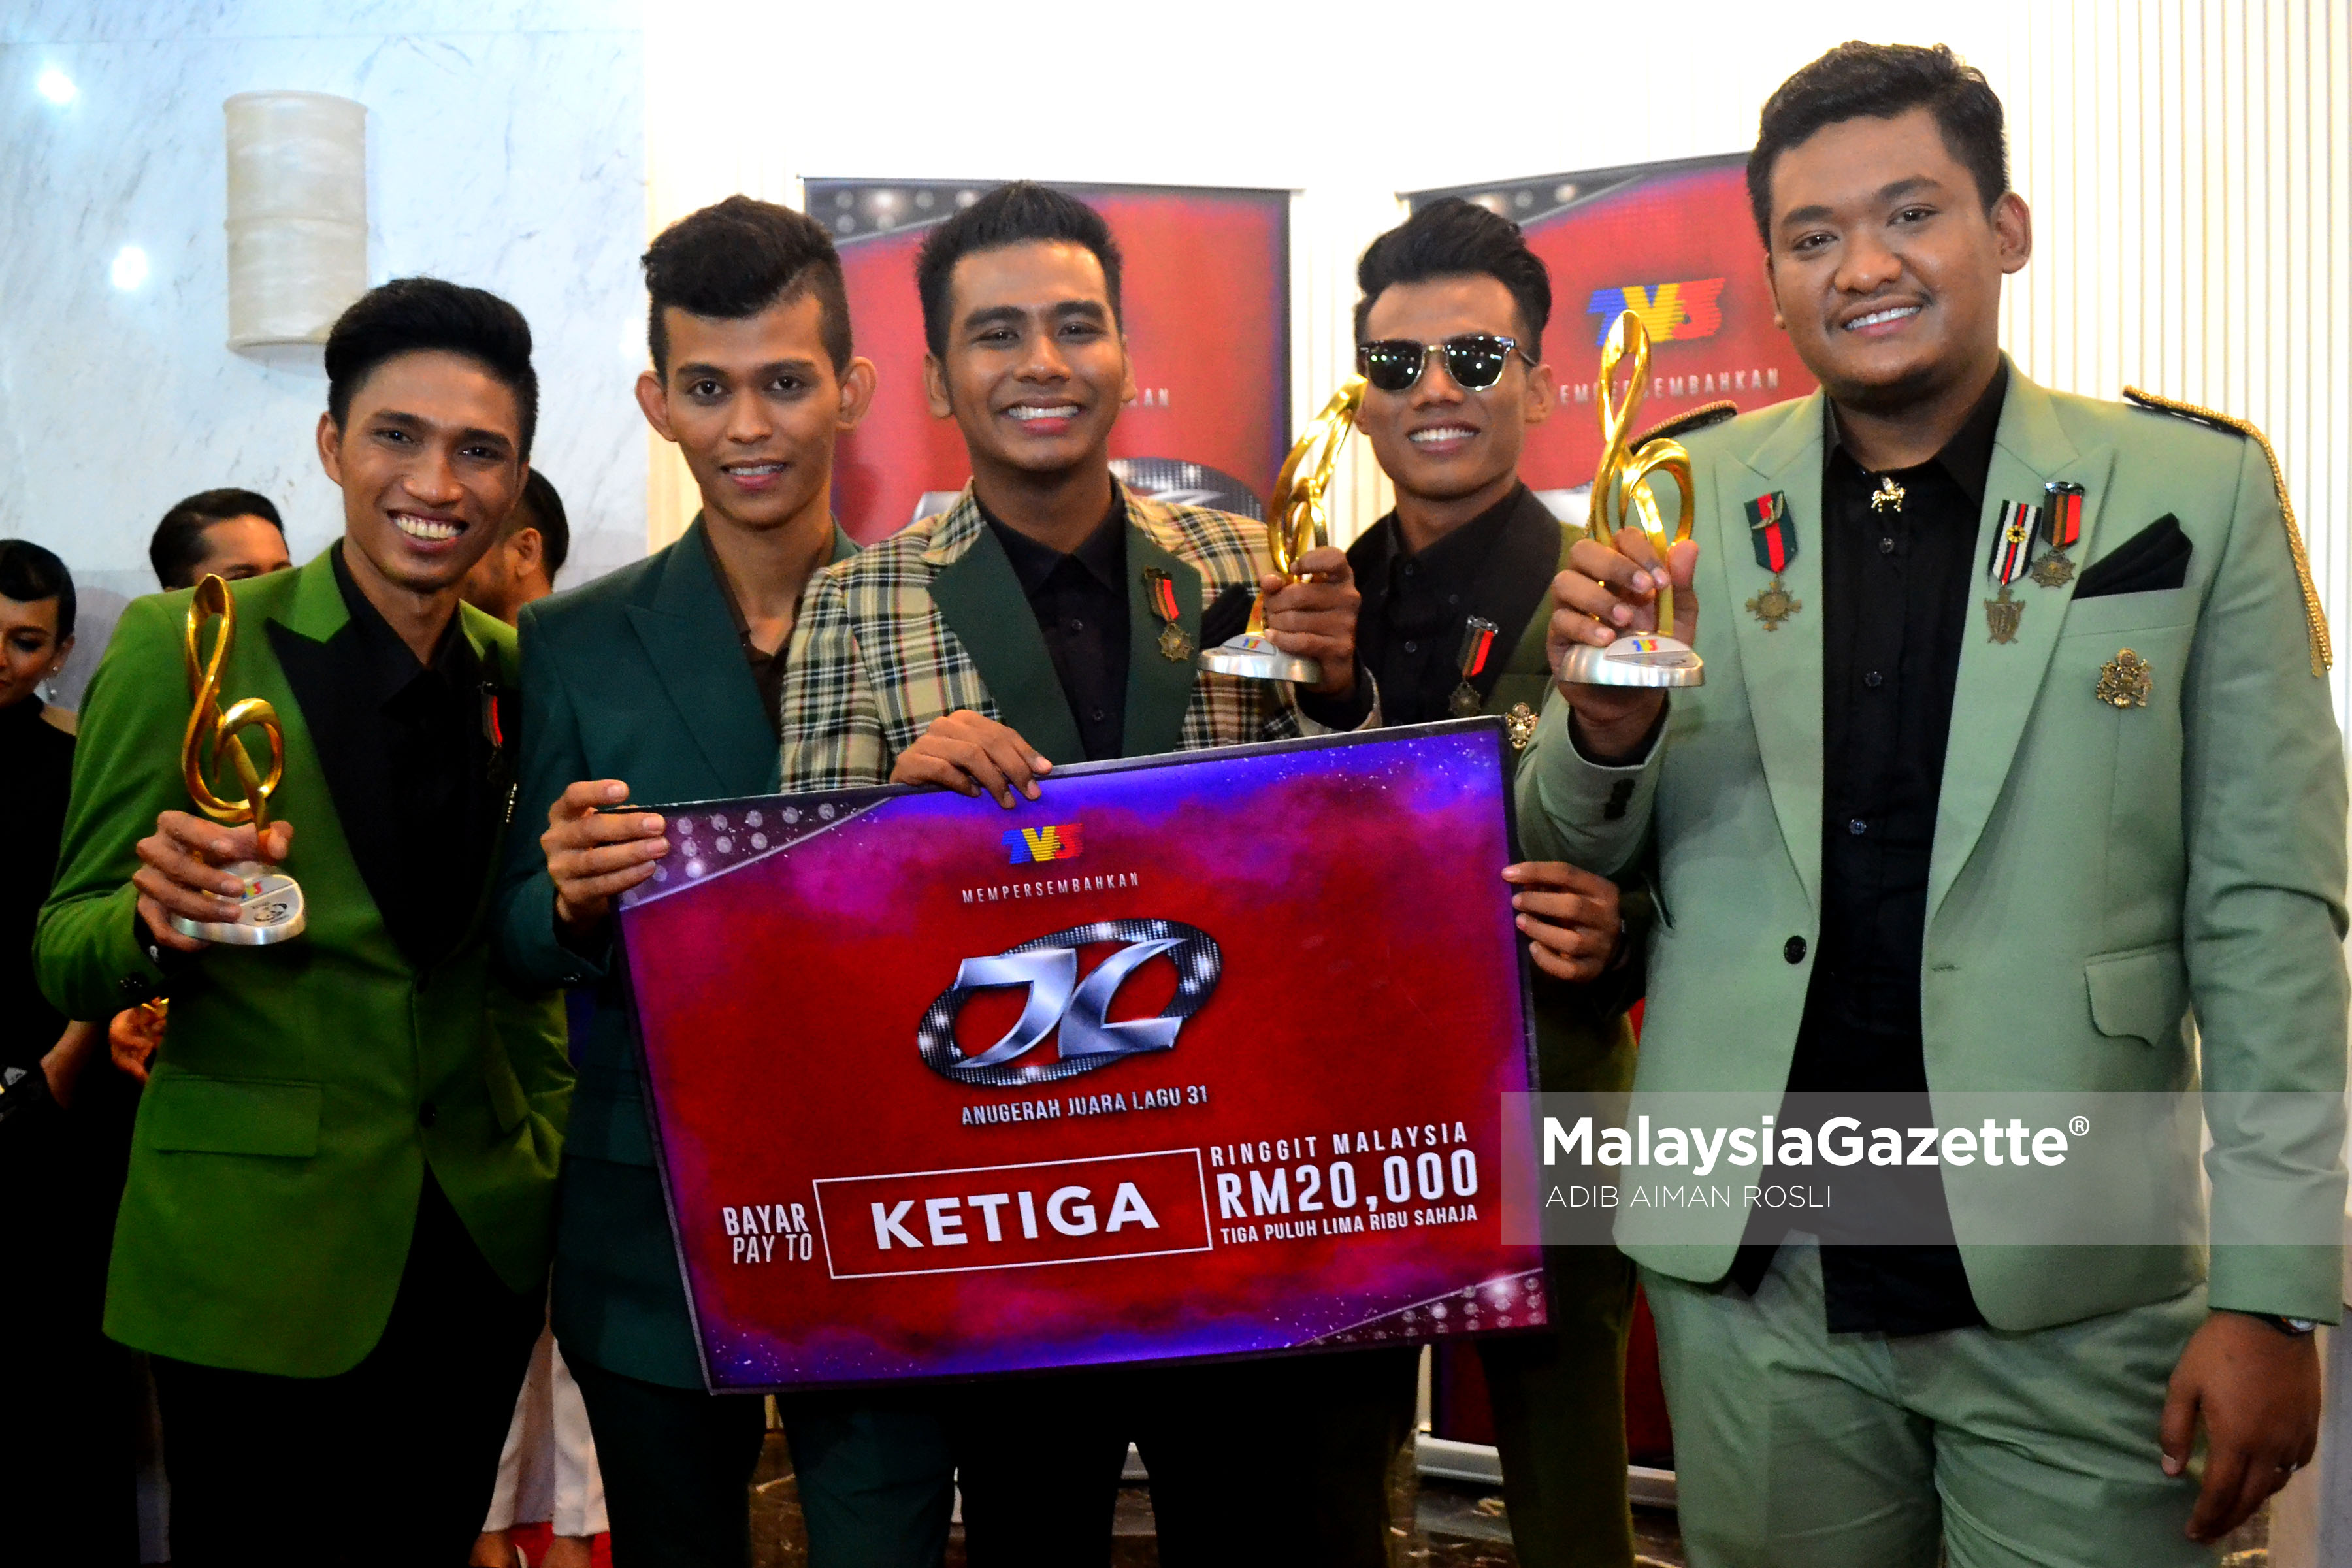 Kumpulan Projector Band dinobatkan sebagai pemenang Tempat Ketiga pada malam Anugerah Juara Lagu KE 31 di Pusat Dagangan Dunia Putra (PWTC), Kuala Lumpur. foto ADIB AIMAN ROSLI, 22 JANUARI 2017.